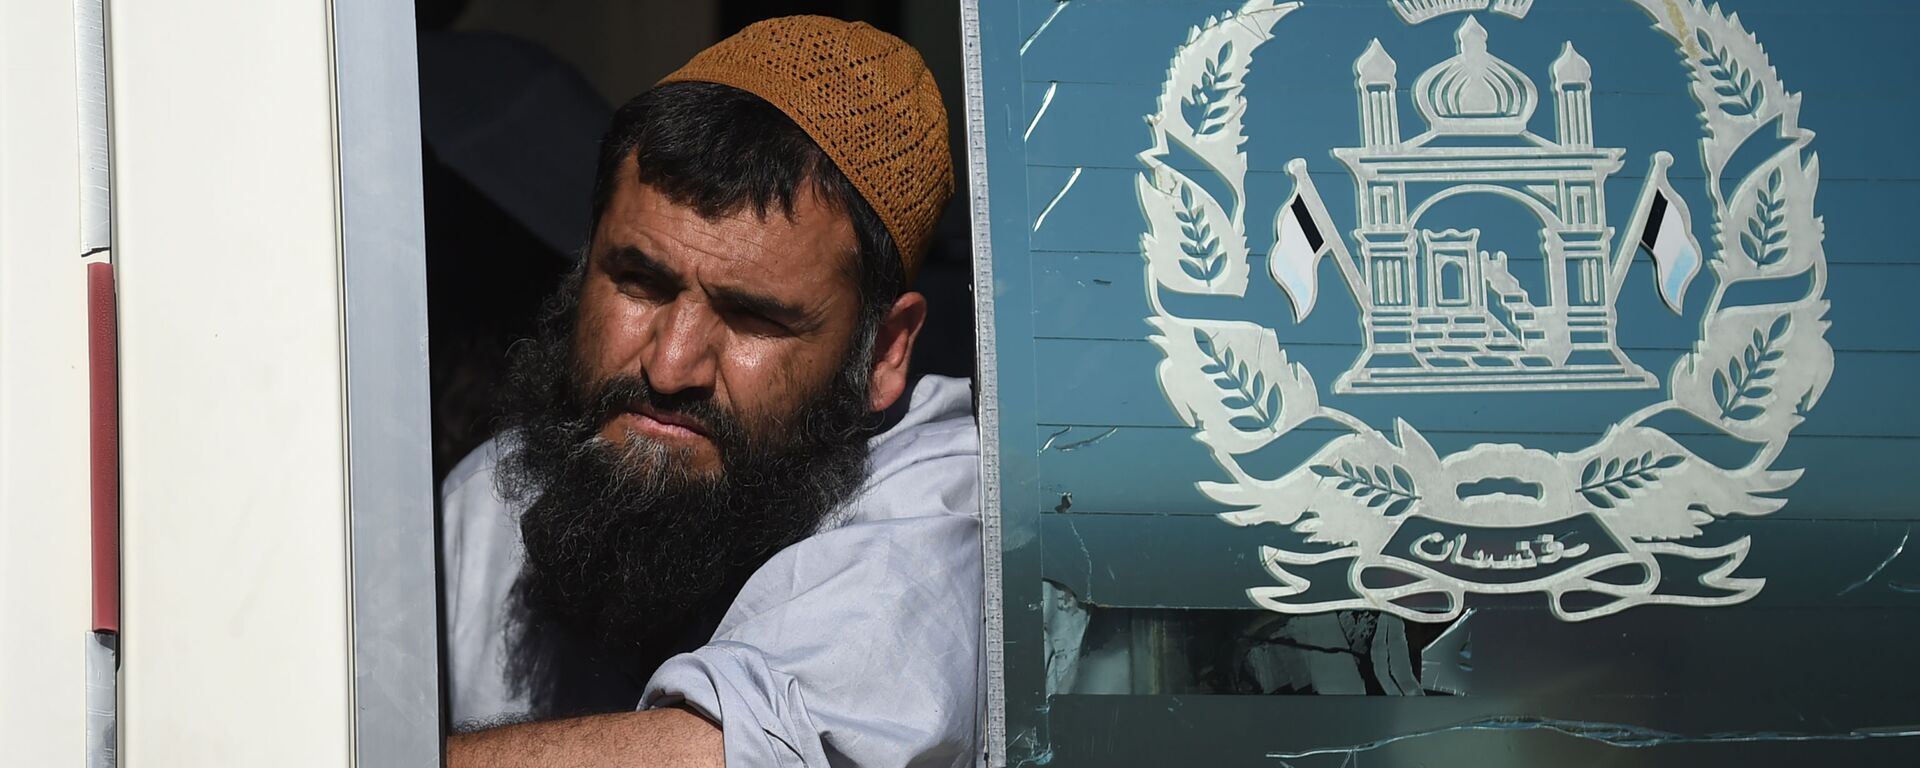 Талиб смотрит из автобуса во время после освобождения из тюрьмы Баграм, Афганистан - Sputnik Таджикистан, 1920, 13.07.2021